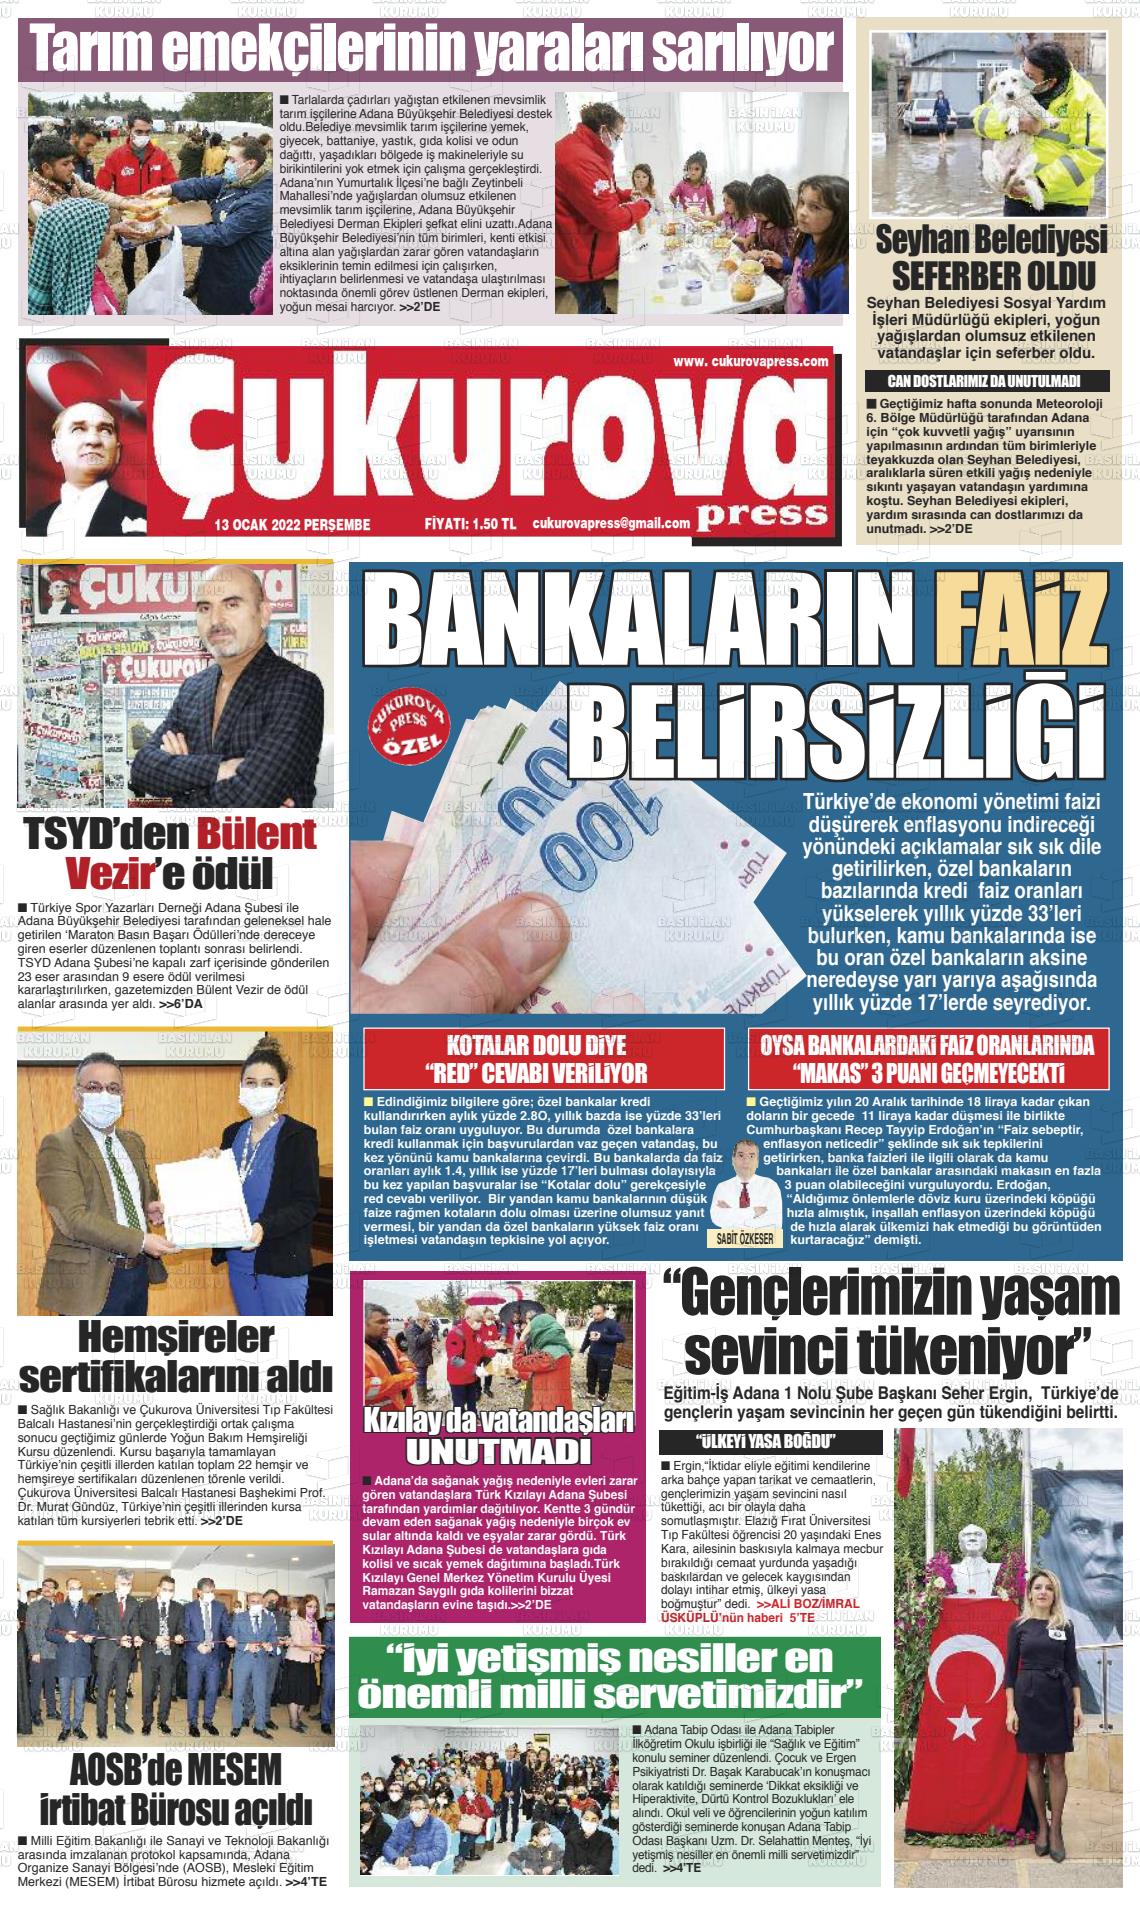 13 Ocak 2022 Çukurova Press Gazete Manşeti